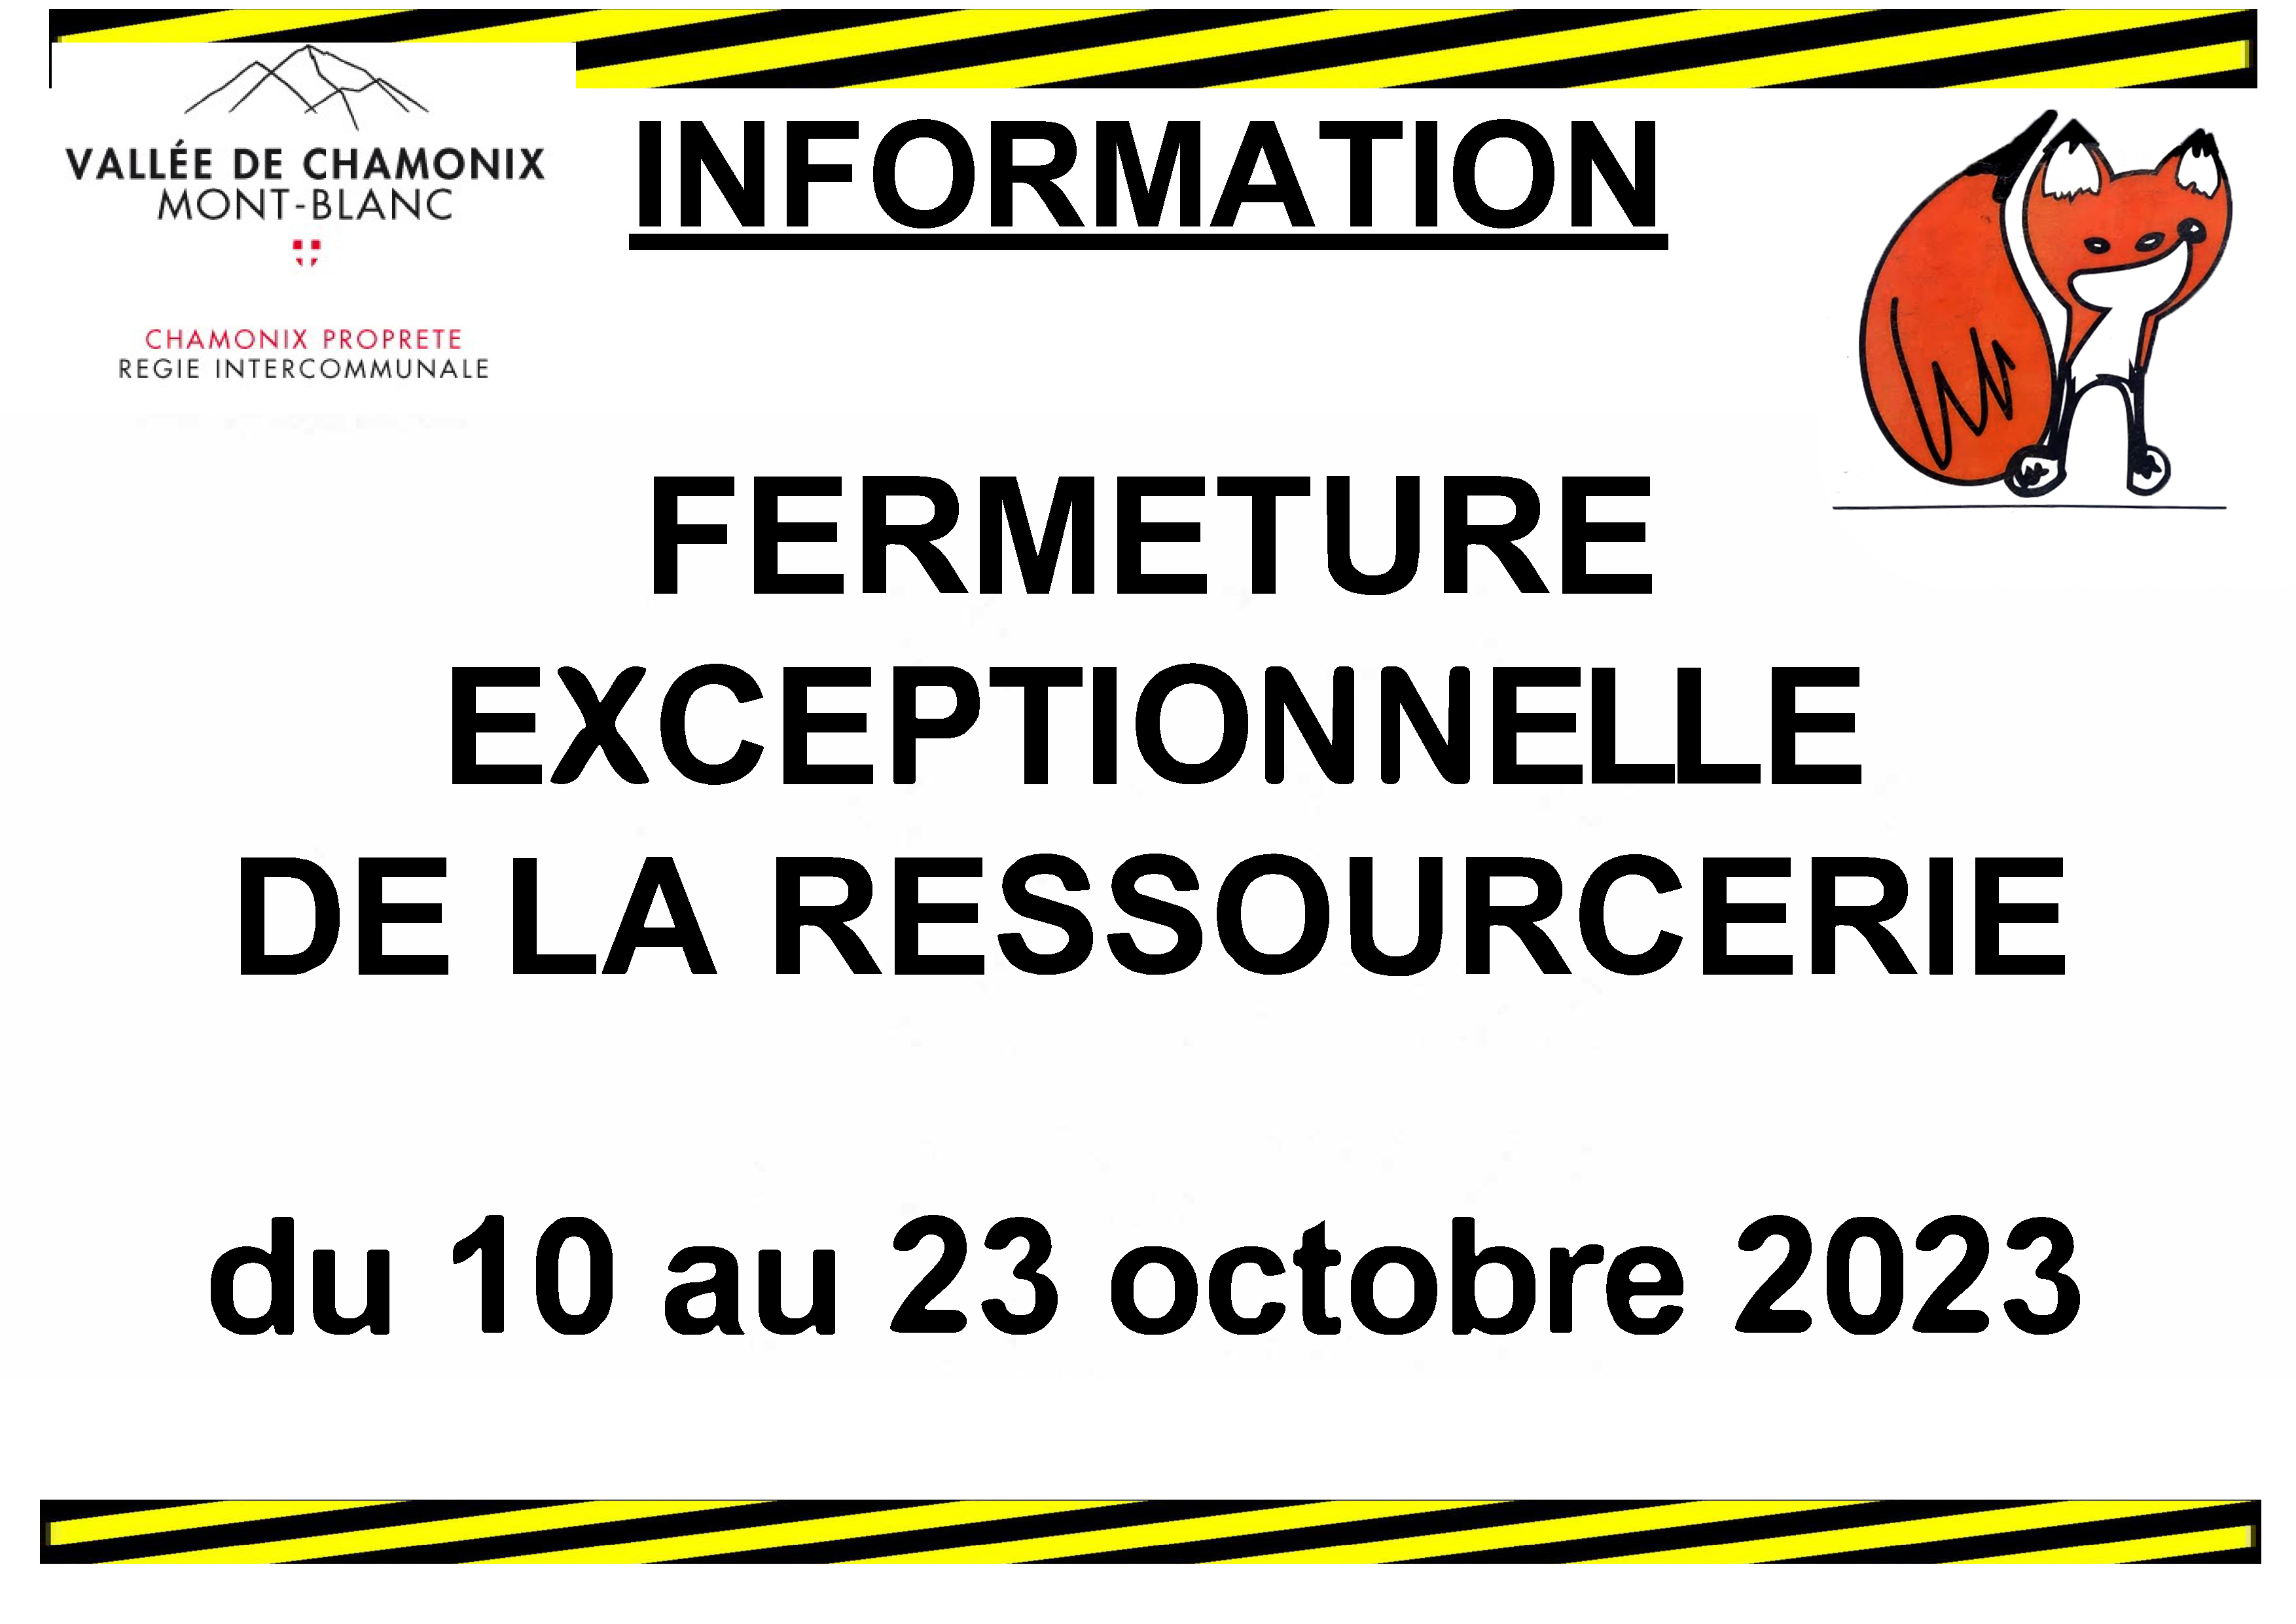 Fermeture exceptionnelle de la ressourcerie du 10 au 23 octobre 2023.